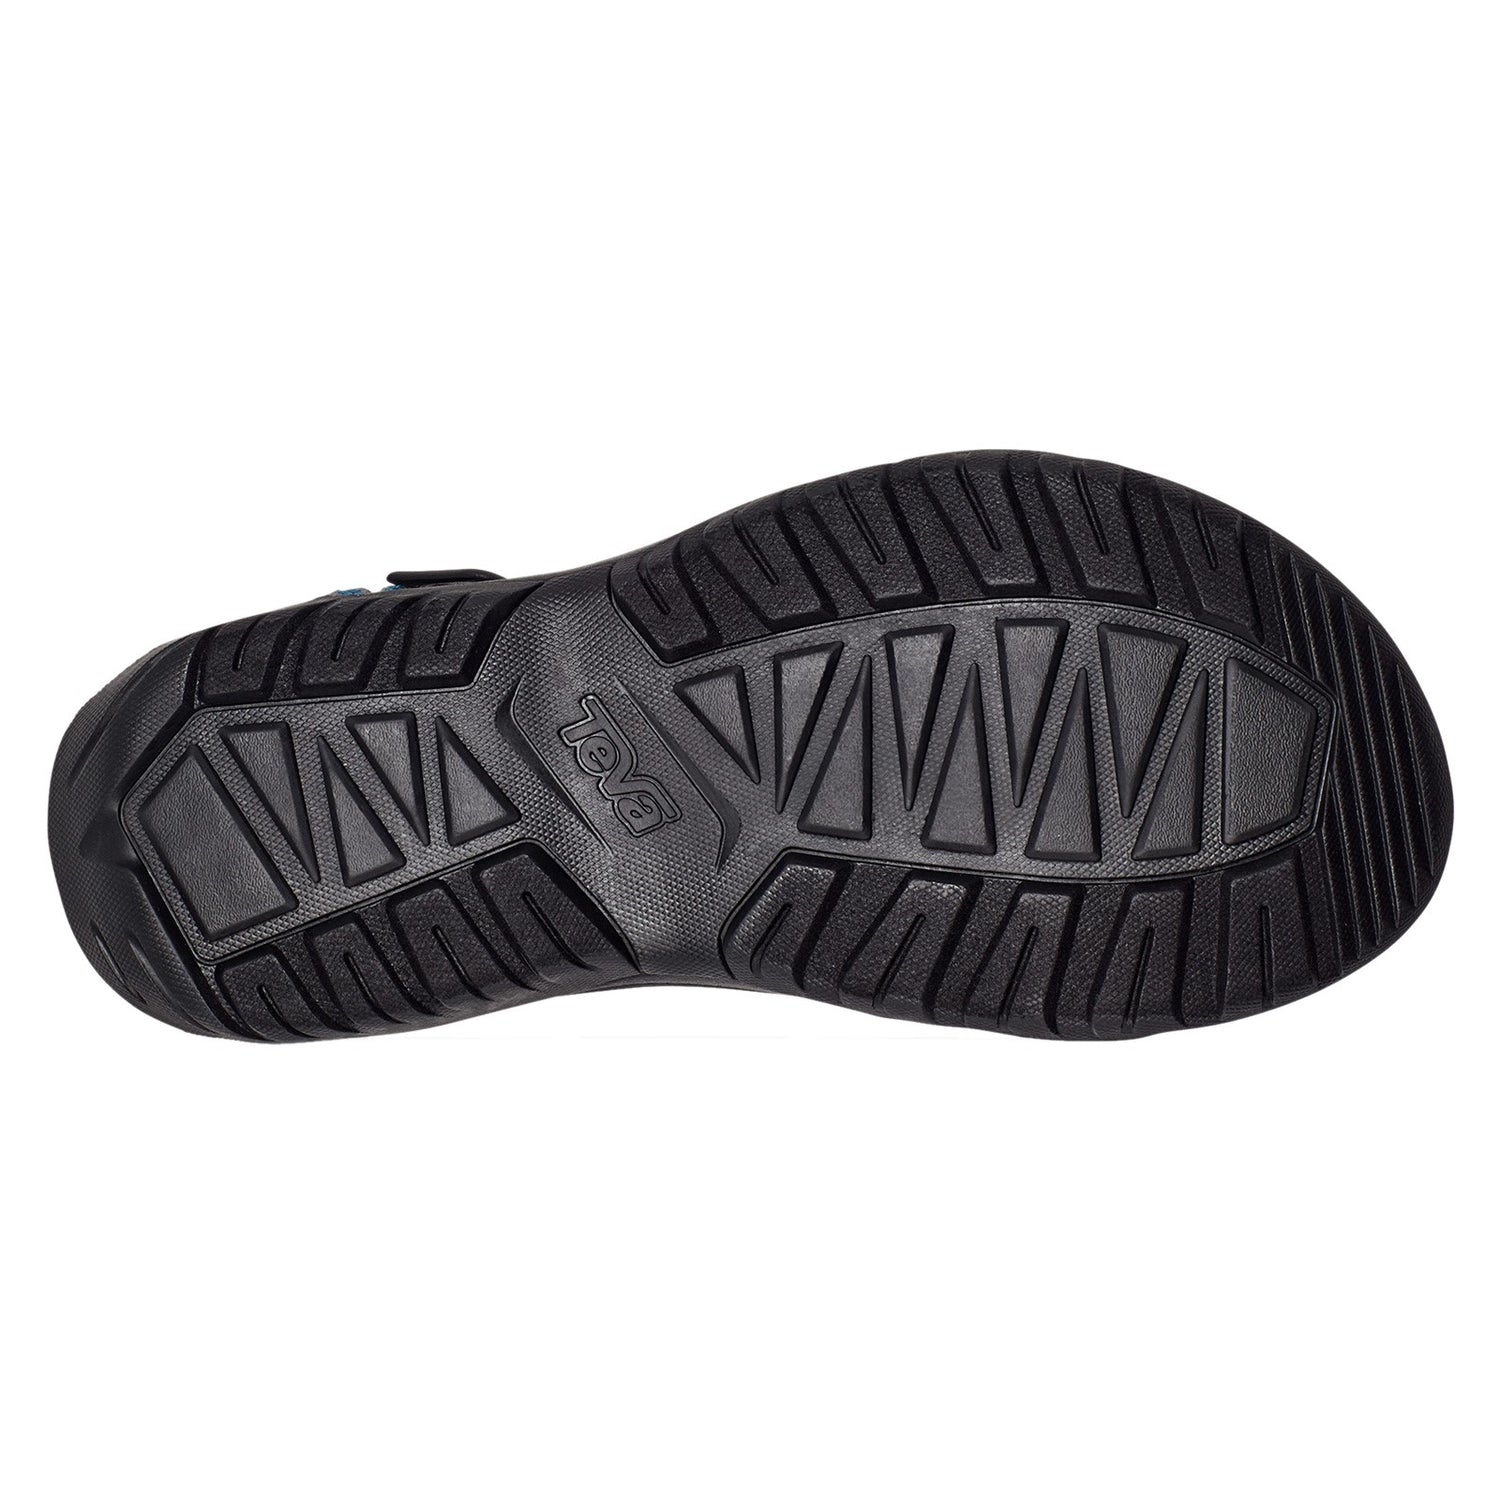 Peltz Shoes  Men's Teva Hurricane XLT2 Sandal NAVY MULTI 1019234-FMNG